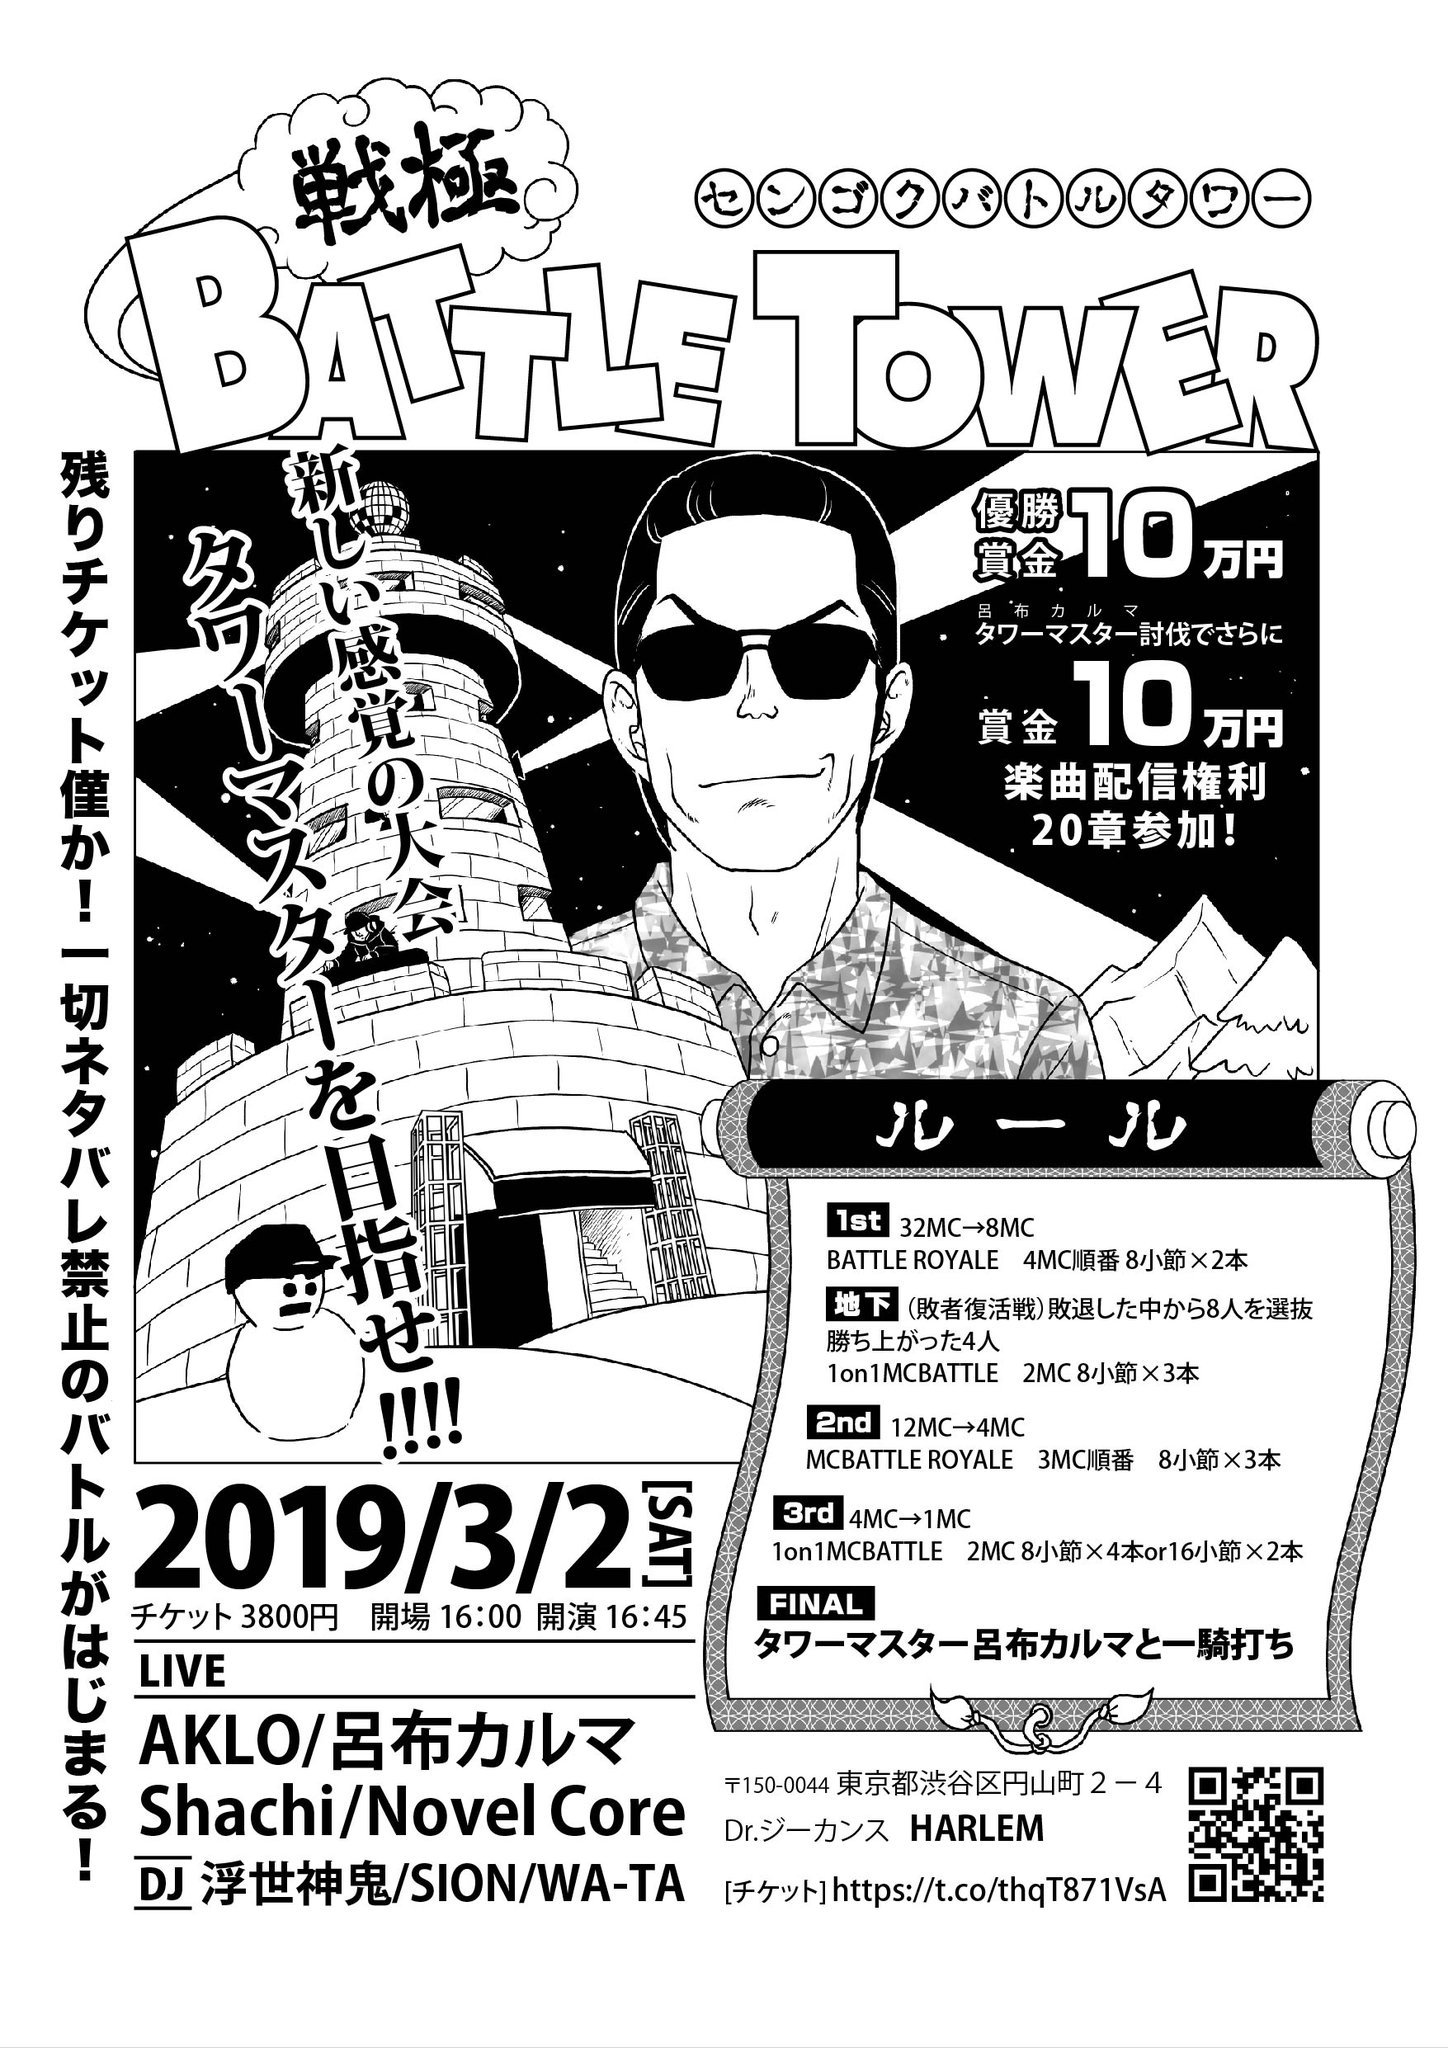 3/2「戦極BATLLE TOWER」タイムテーブル公開！_e0246863_02124901.jpg